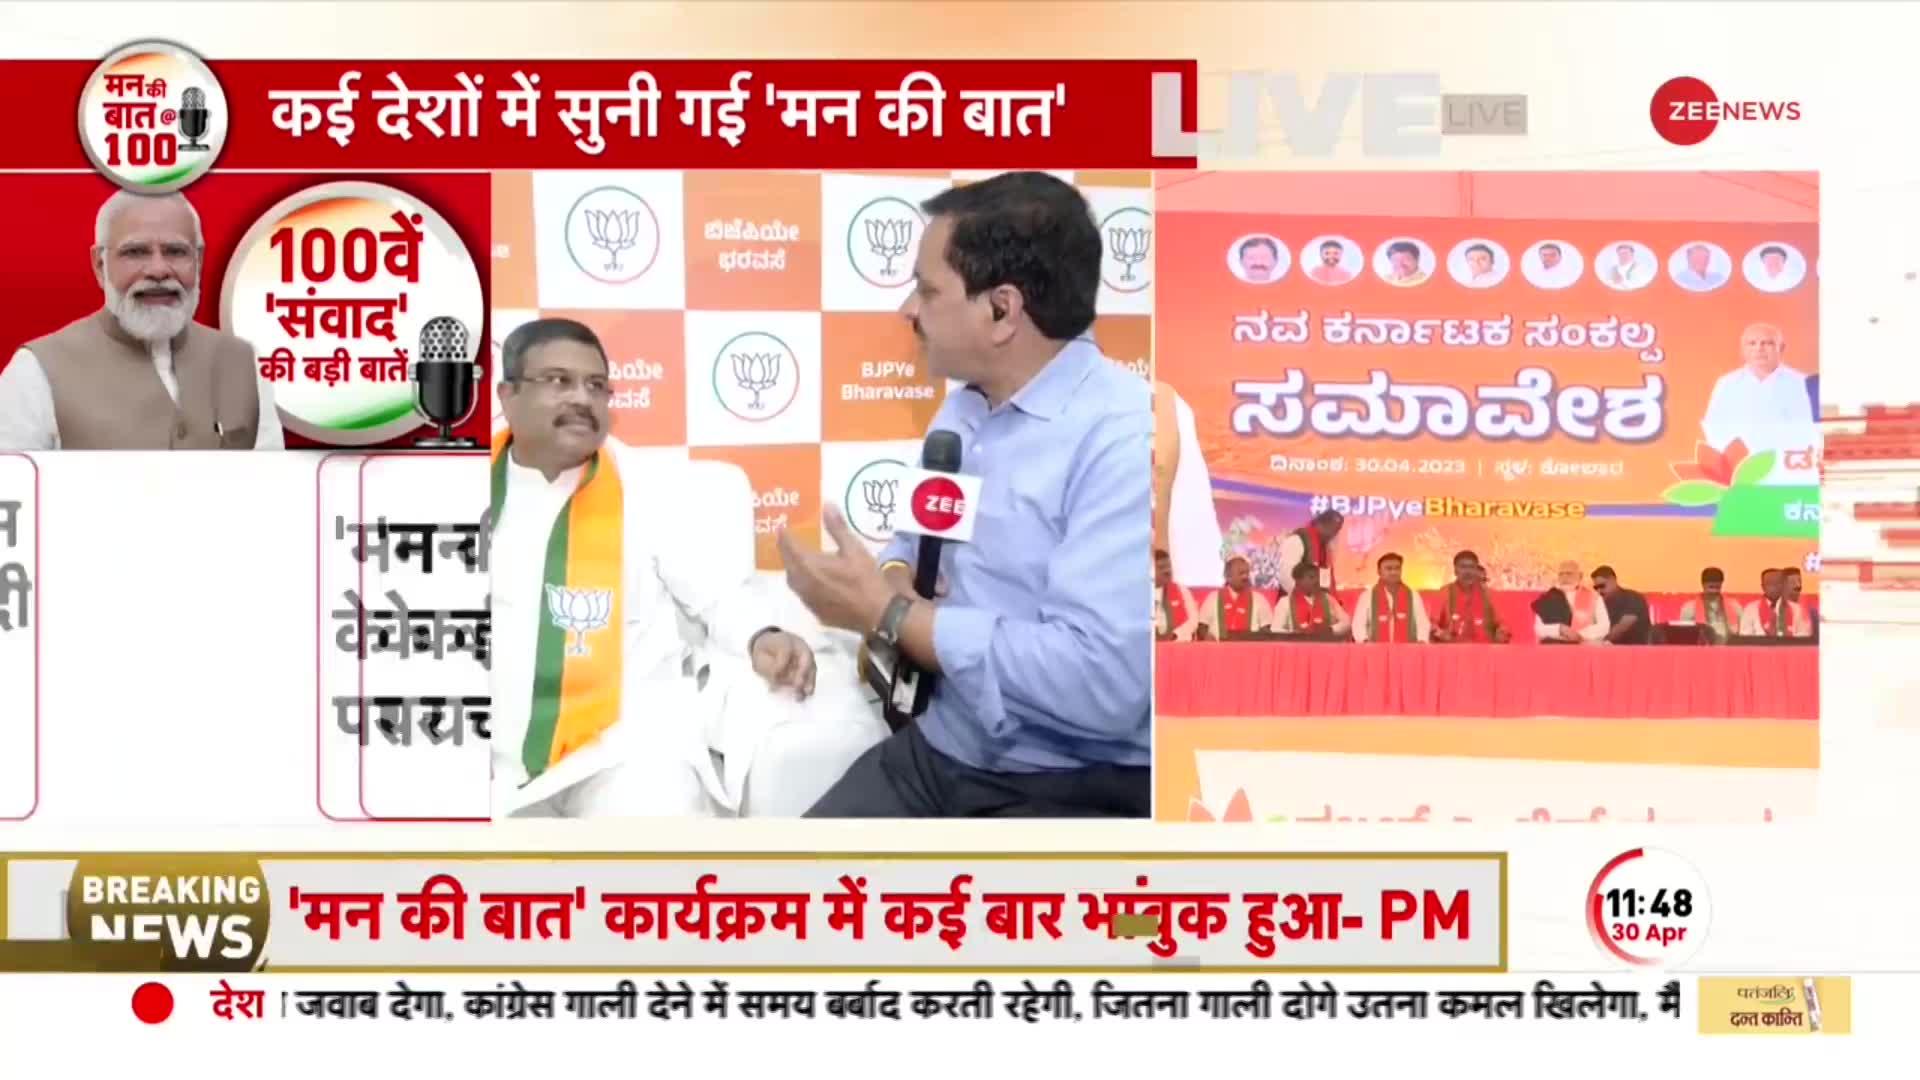 Mann Ki Baat: केंद्रीय मंत्री Dharmendra Pradhan बोले- ये लोगों की दिल की बात | PM Modi